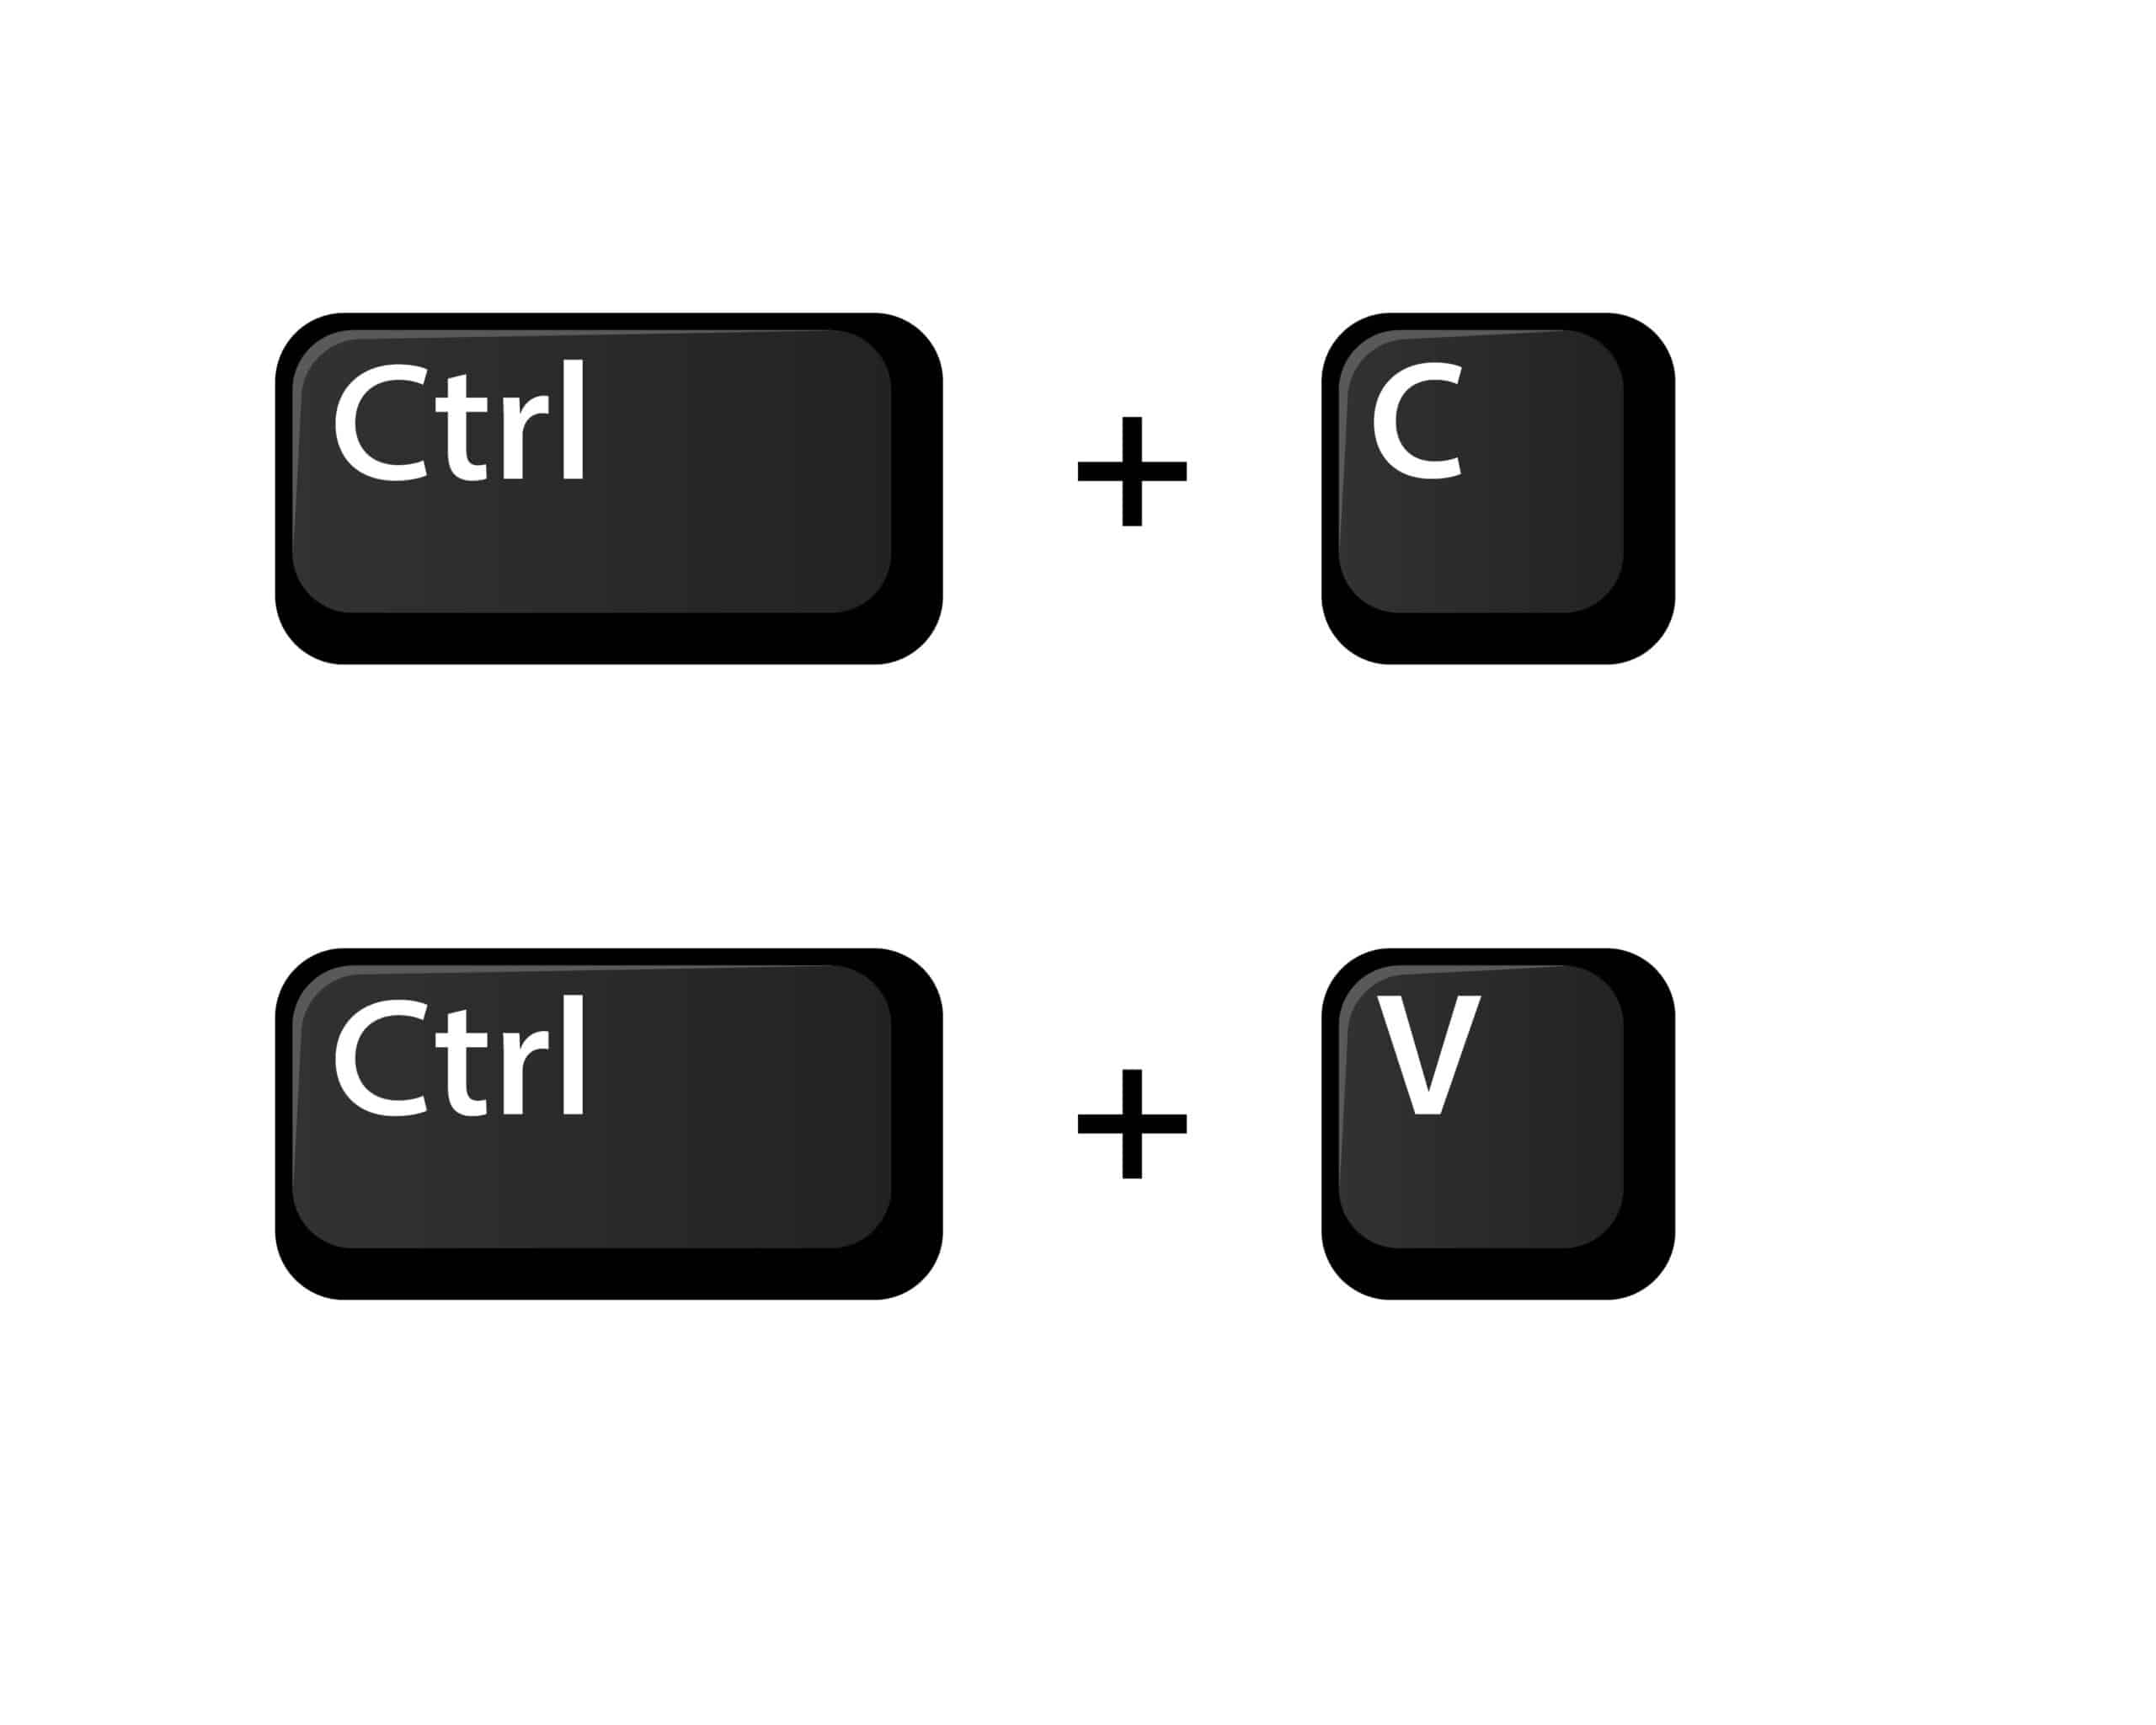 Ctrl C Ctrl V key icon. Clipart image isolated on white background